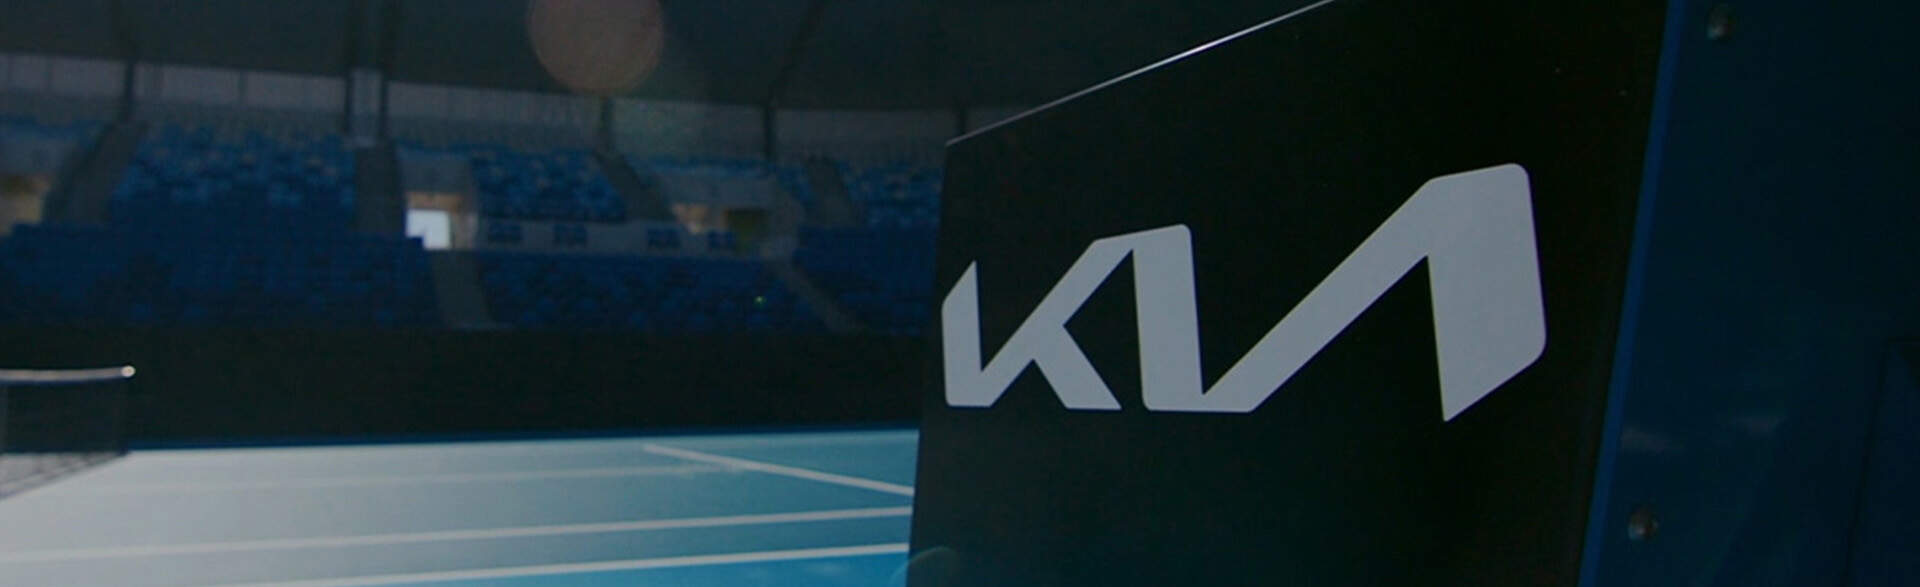 Kia，澳洲網球公開賽主要贊助夥伴